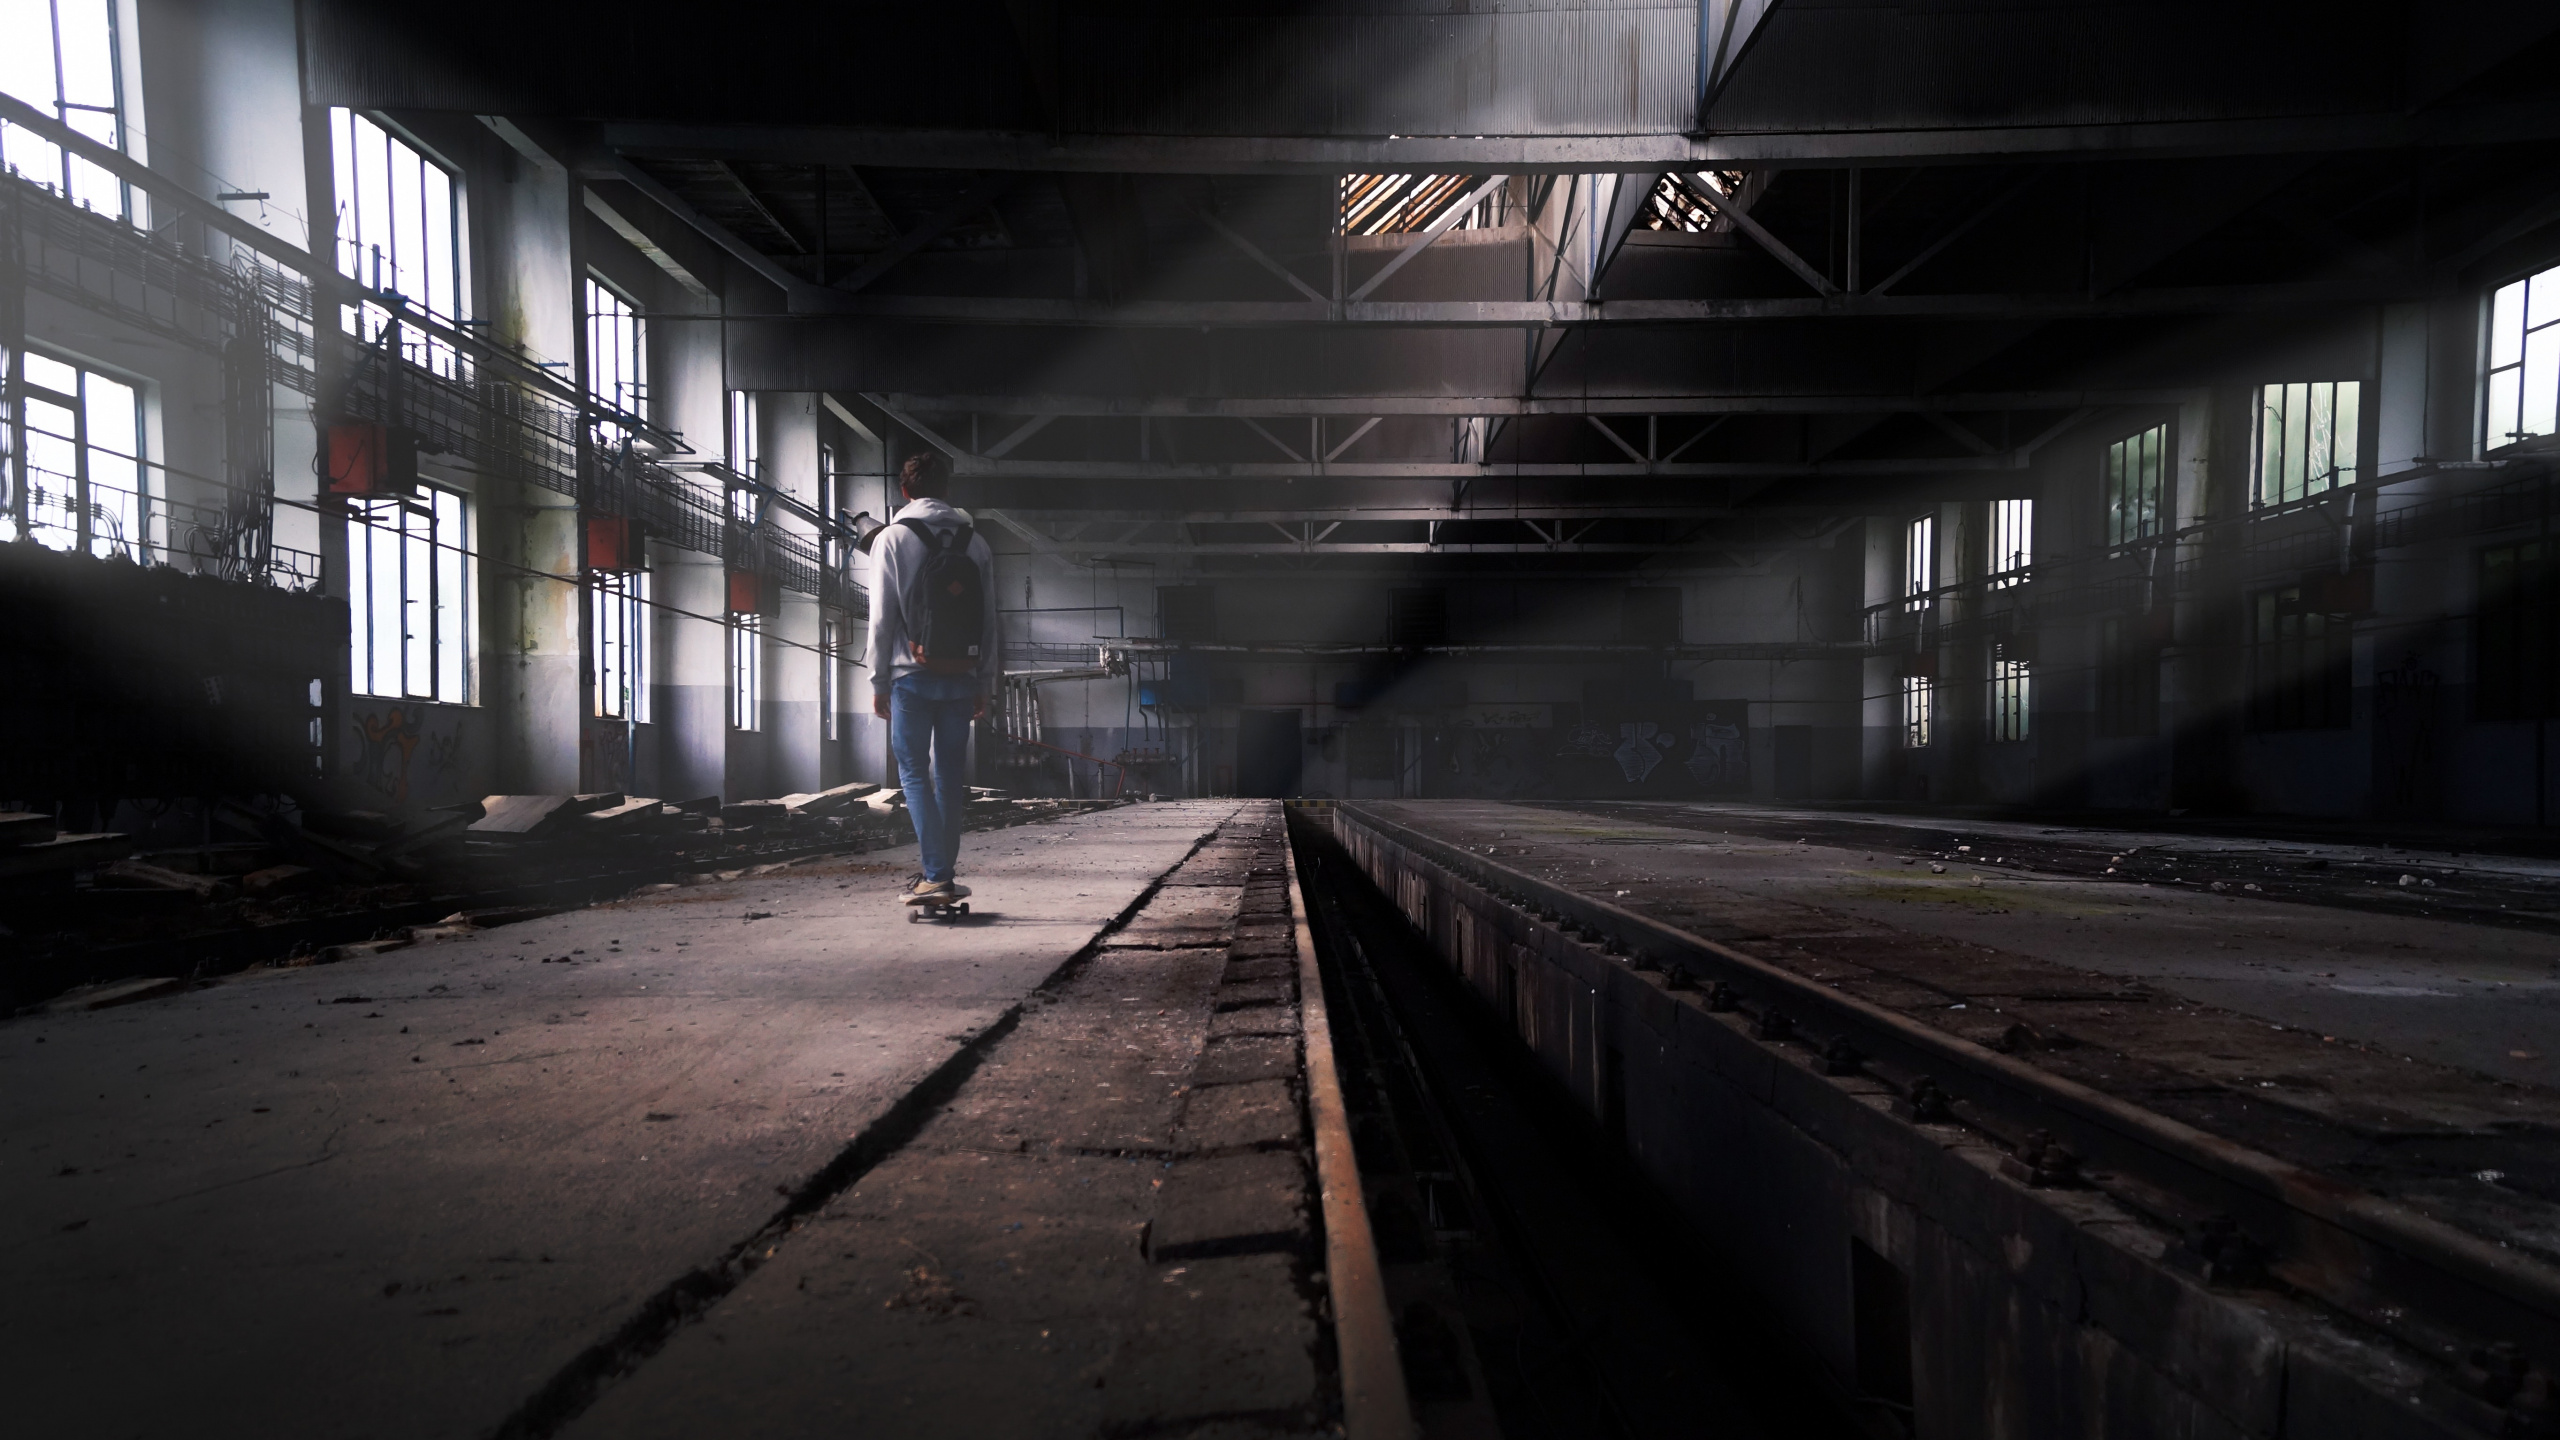 Man in Blue Denim Jeans Walking on Train Station. Wallpaper in 2560x1440 Resolution